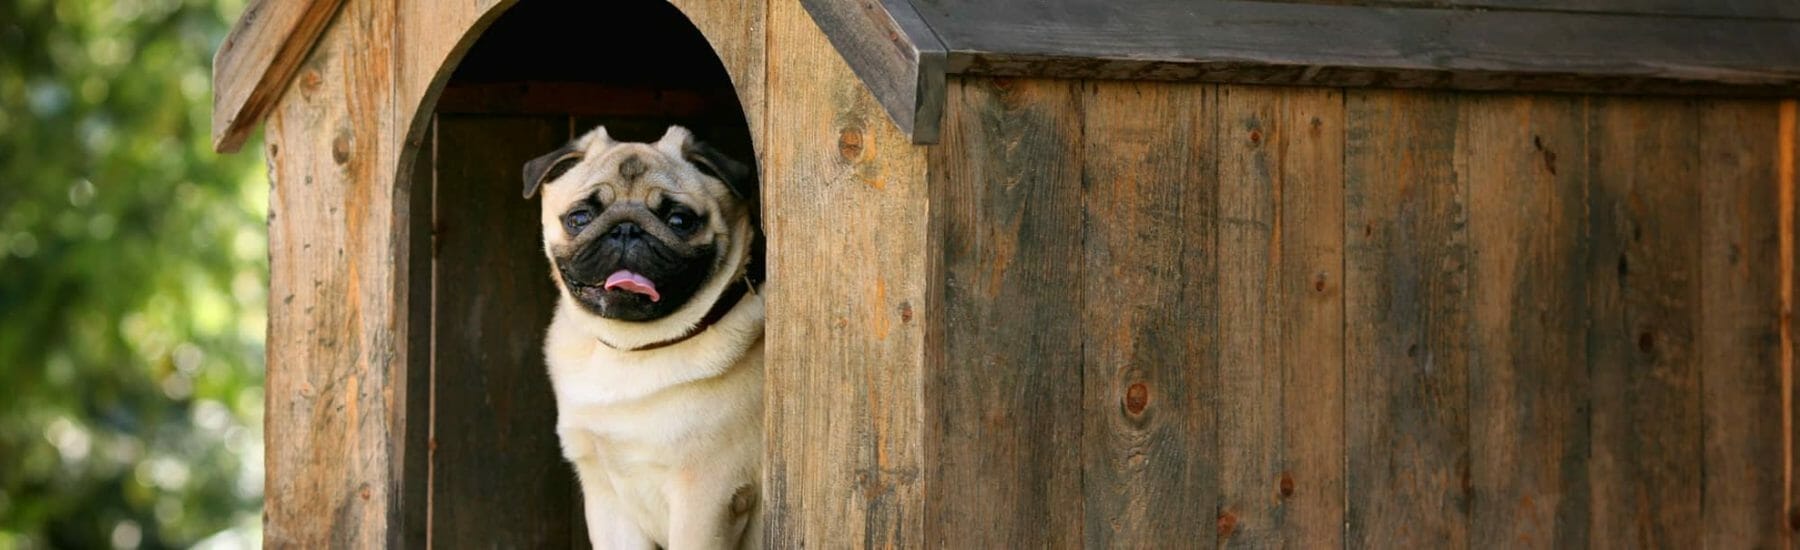 Pug waiting inside dog house